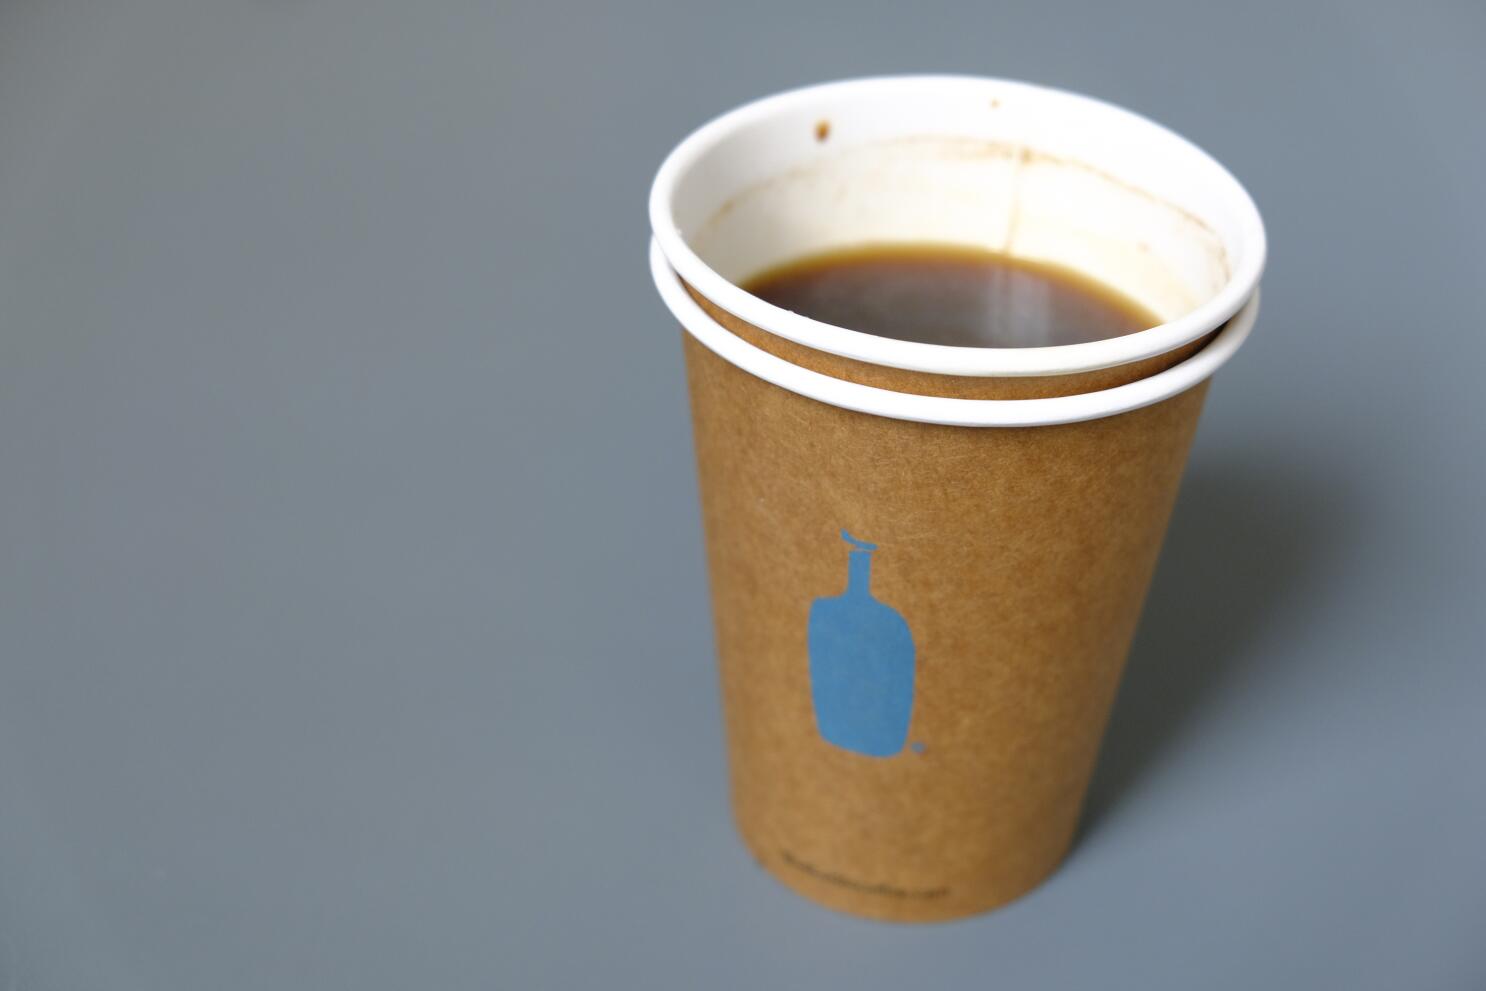 Las cafeterías de San Francisco están eliminando los vasos desechables - Los  Angeles Times